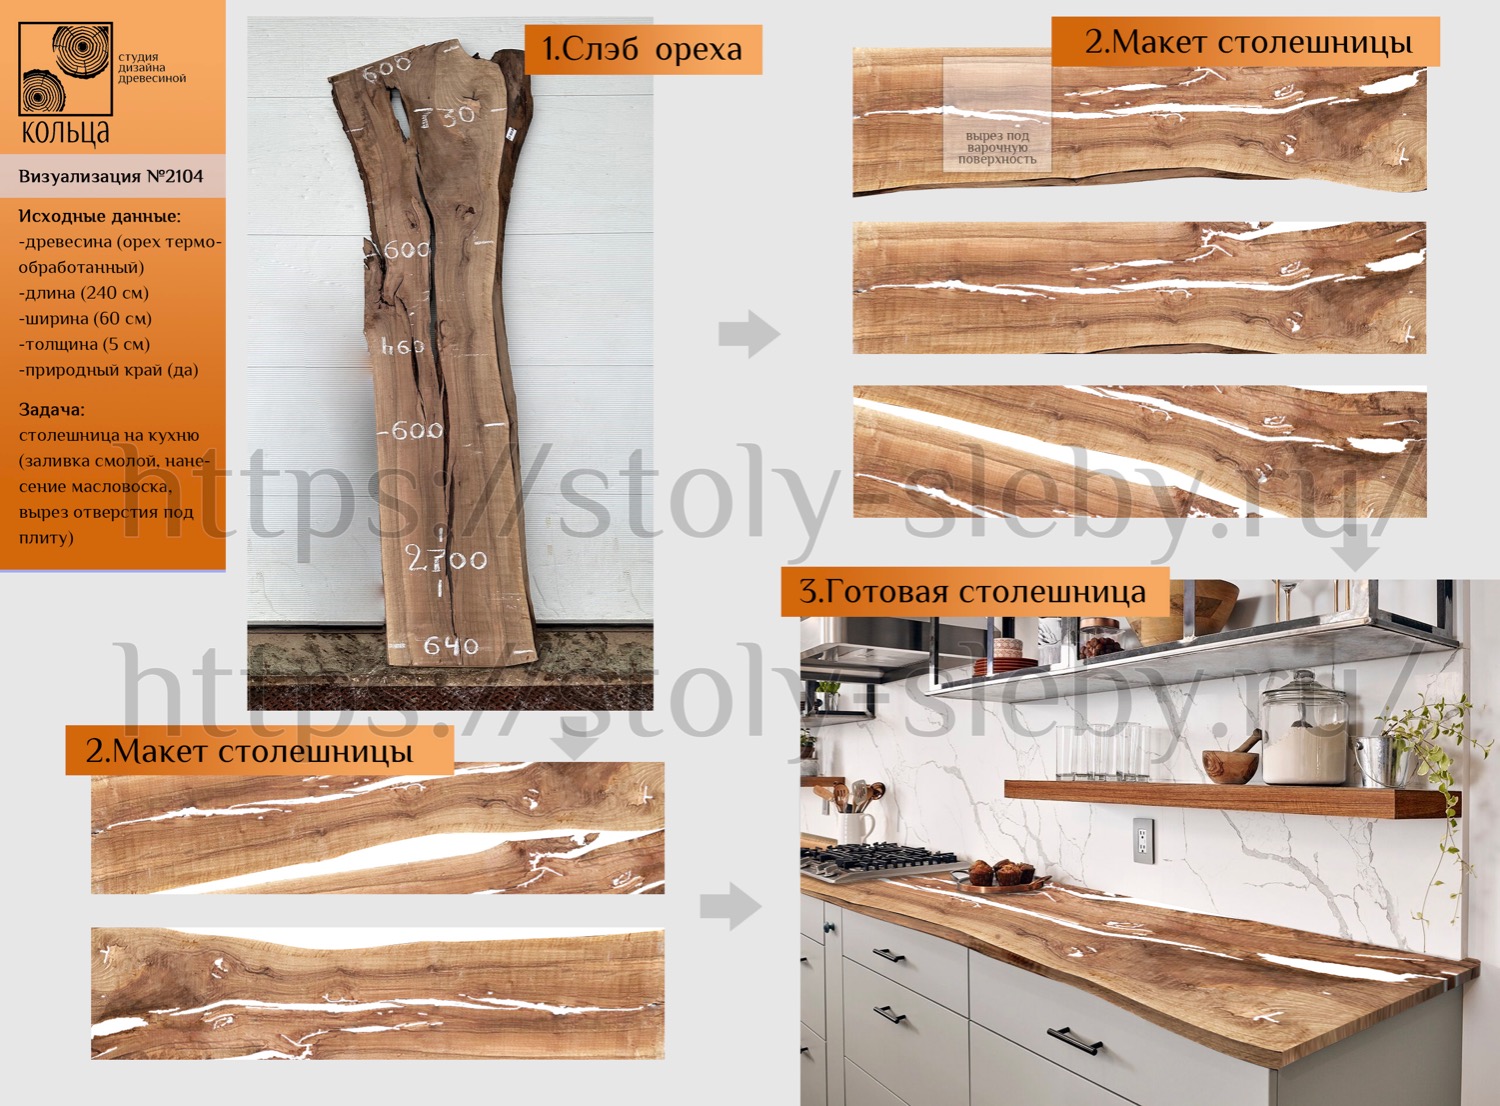 Инфографика: этапы разработки кухонной столешницы из слэба ореха - от студии Кольца